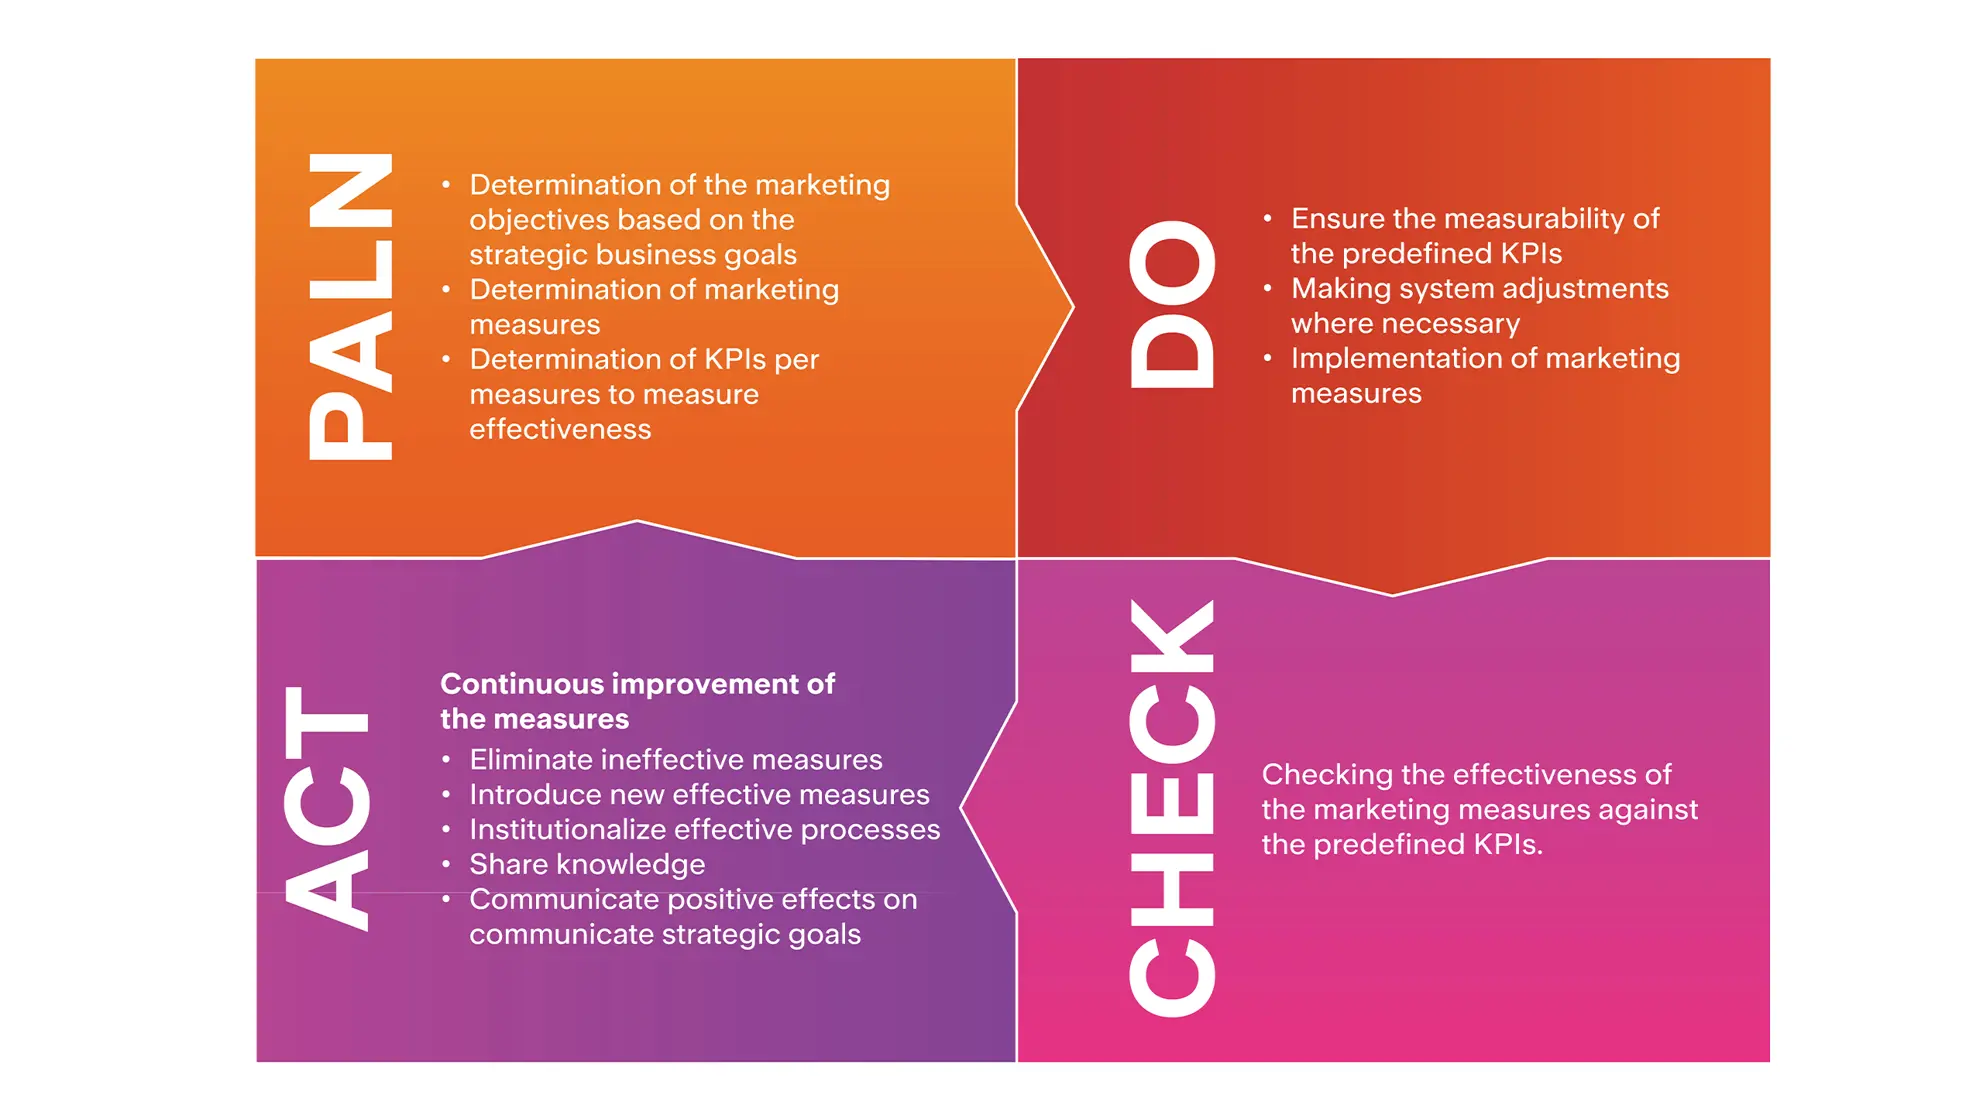 Grafik zu Act, Plan, Do und Check von Marketingmassnahmen